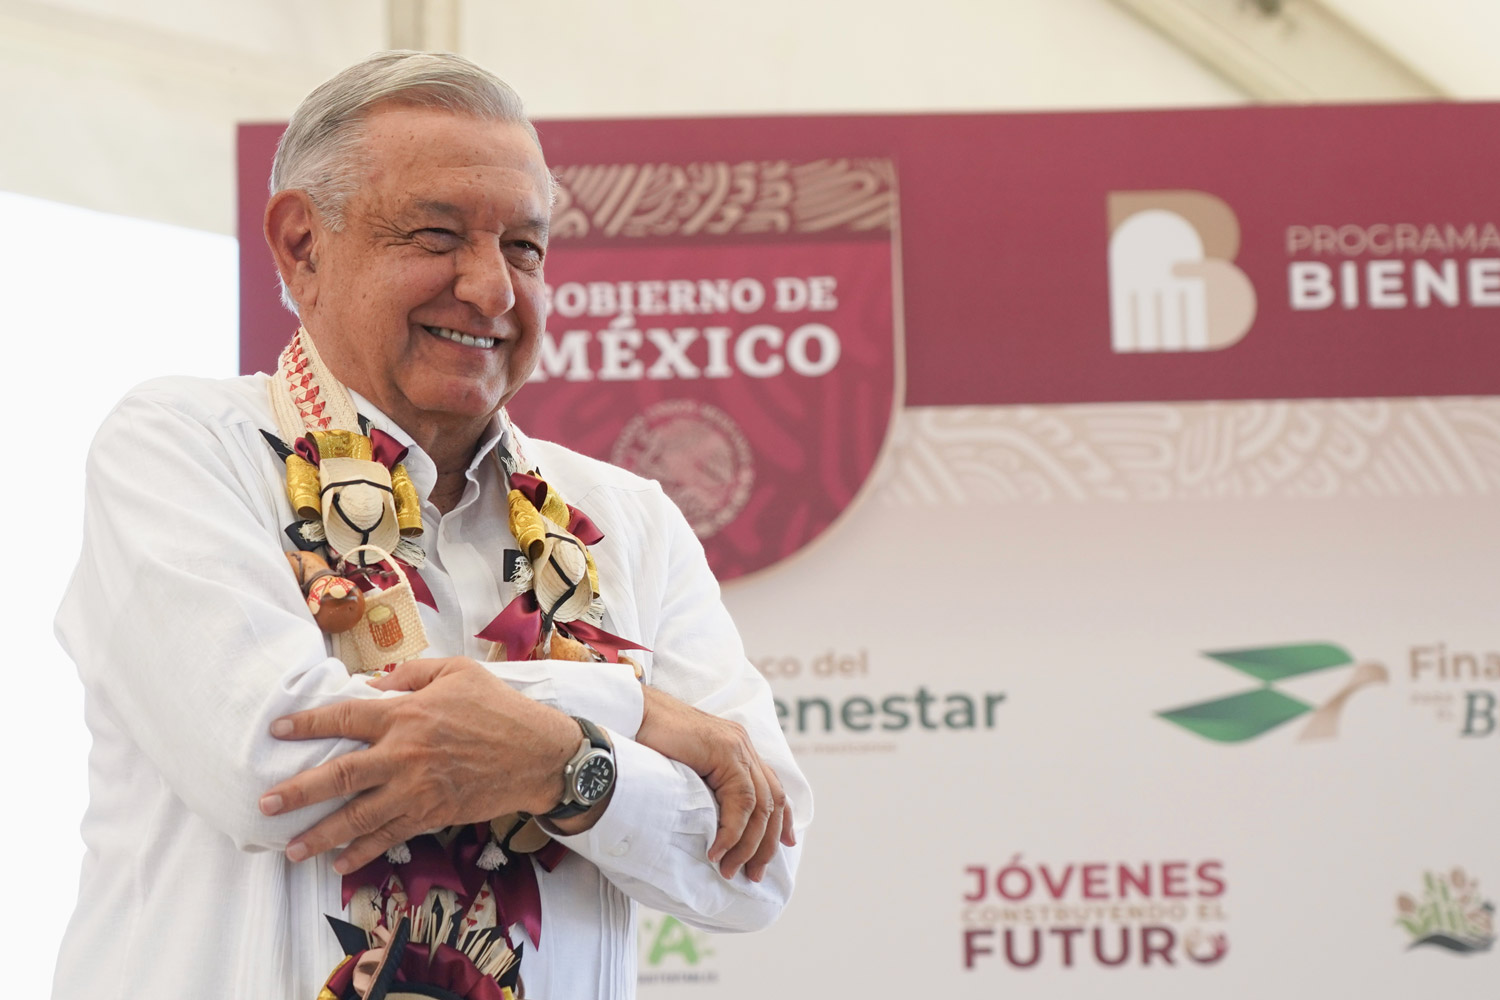 Reafirma el presidente López Obrador su compromiso de reconstruir 250 mil viviendas dañadas por el huracán Otis